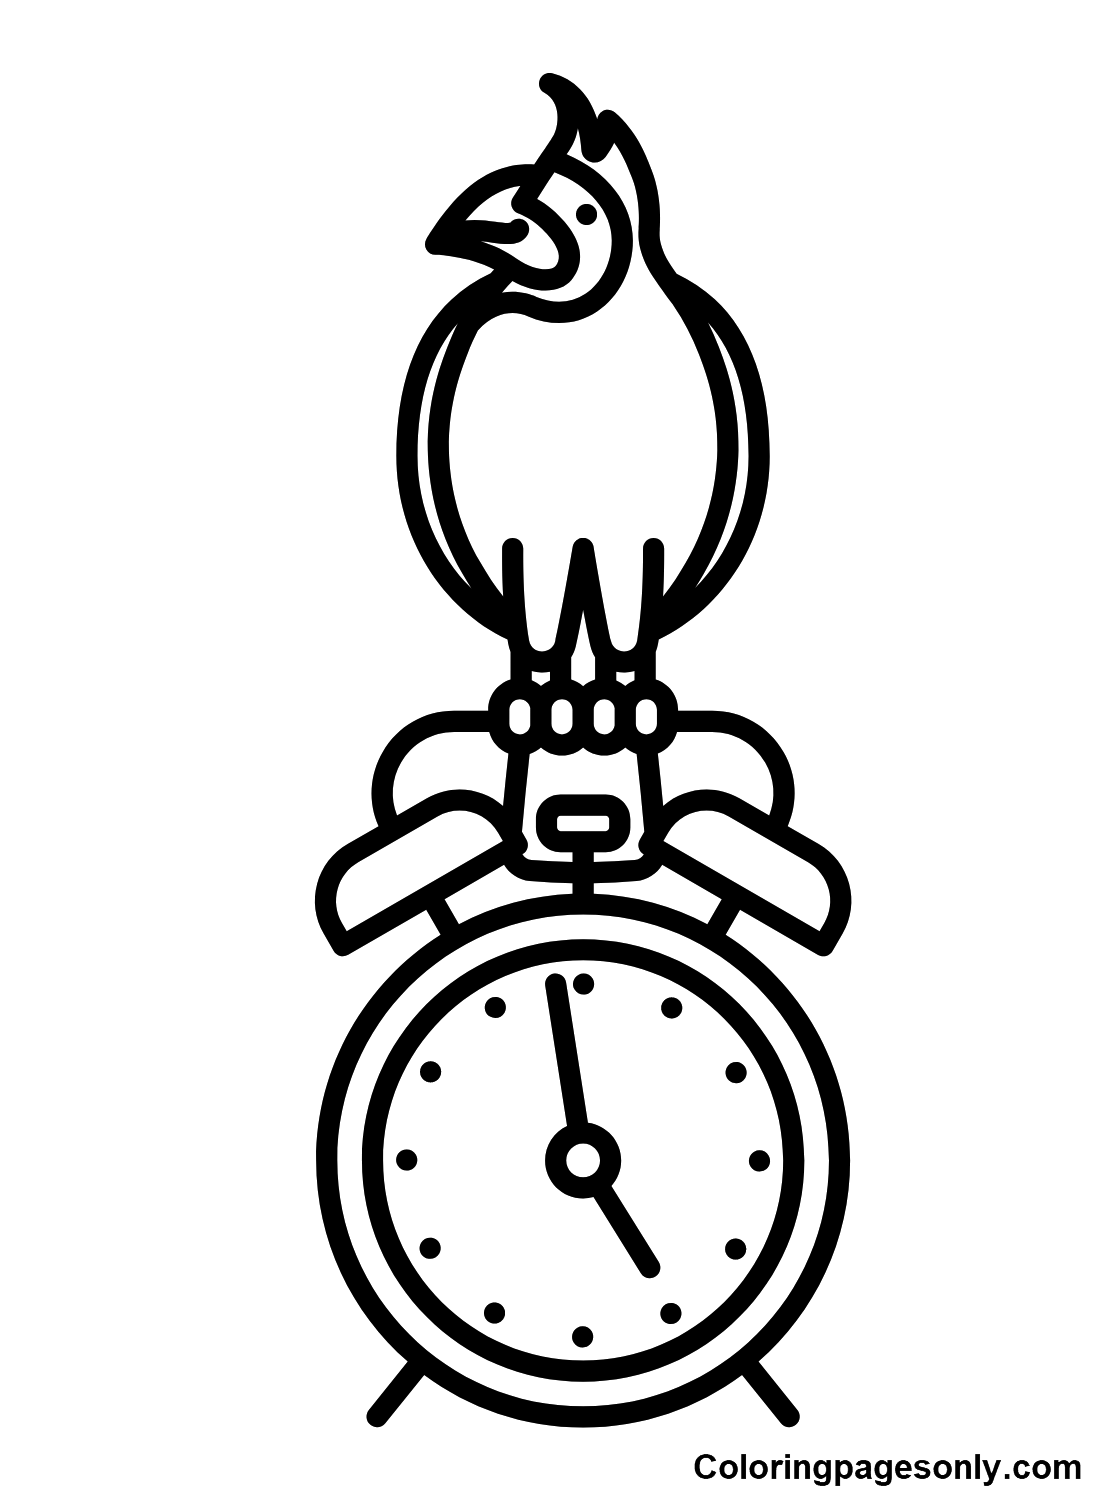 Cardinal Bird on Alarm Clock Coloring Page